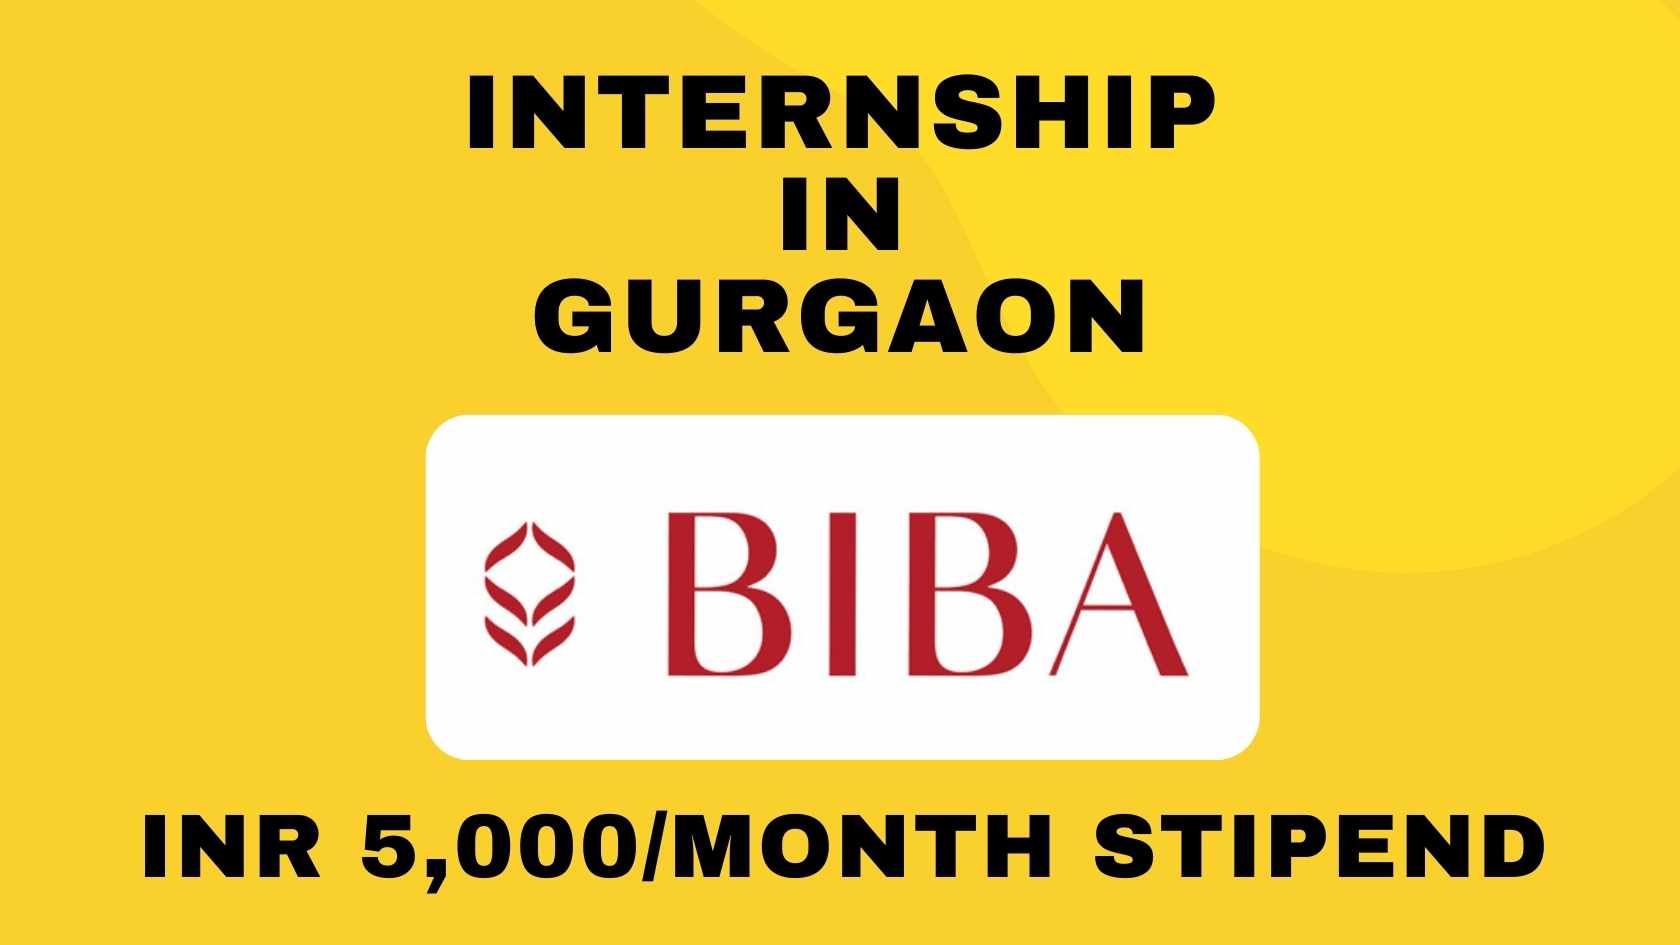 BIBA Fashion Internship in Gurgaon